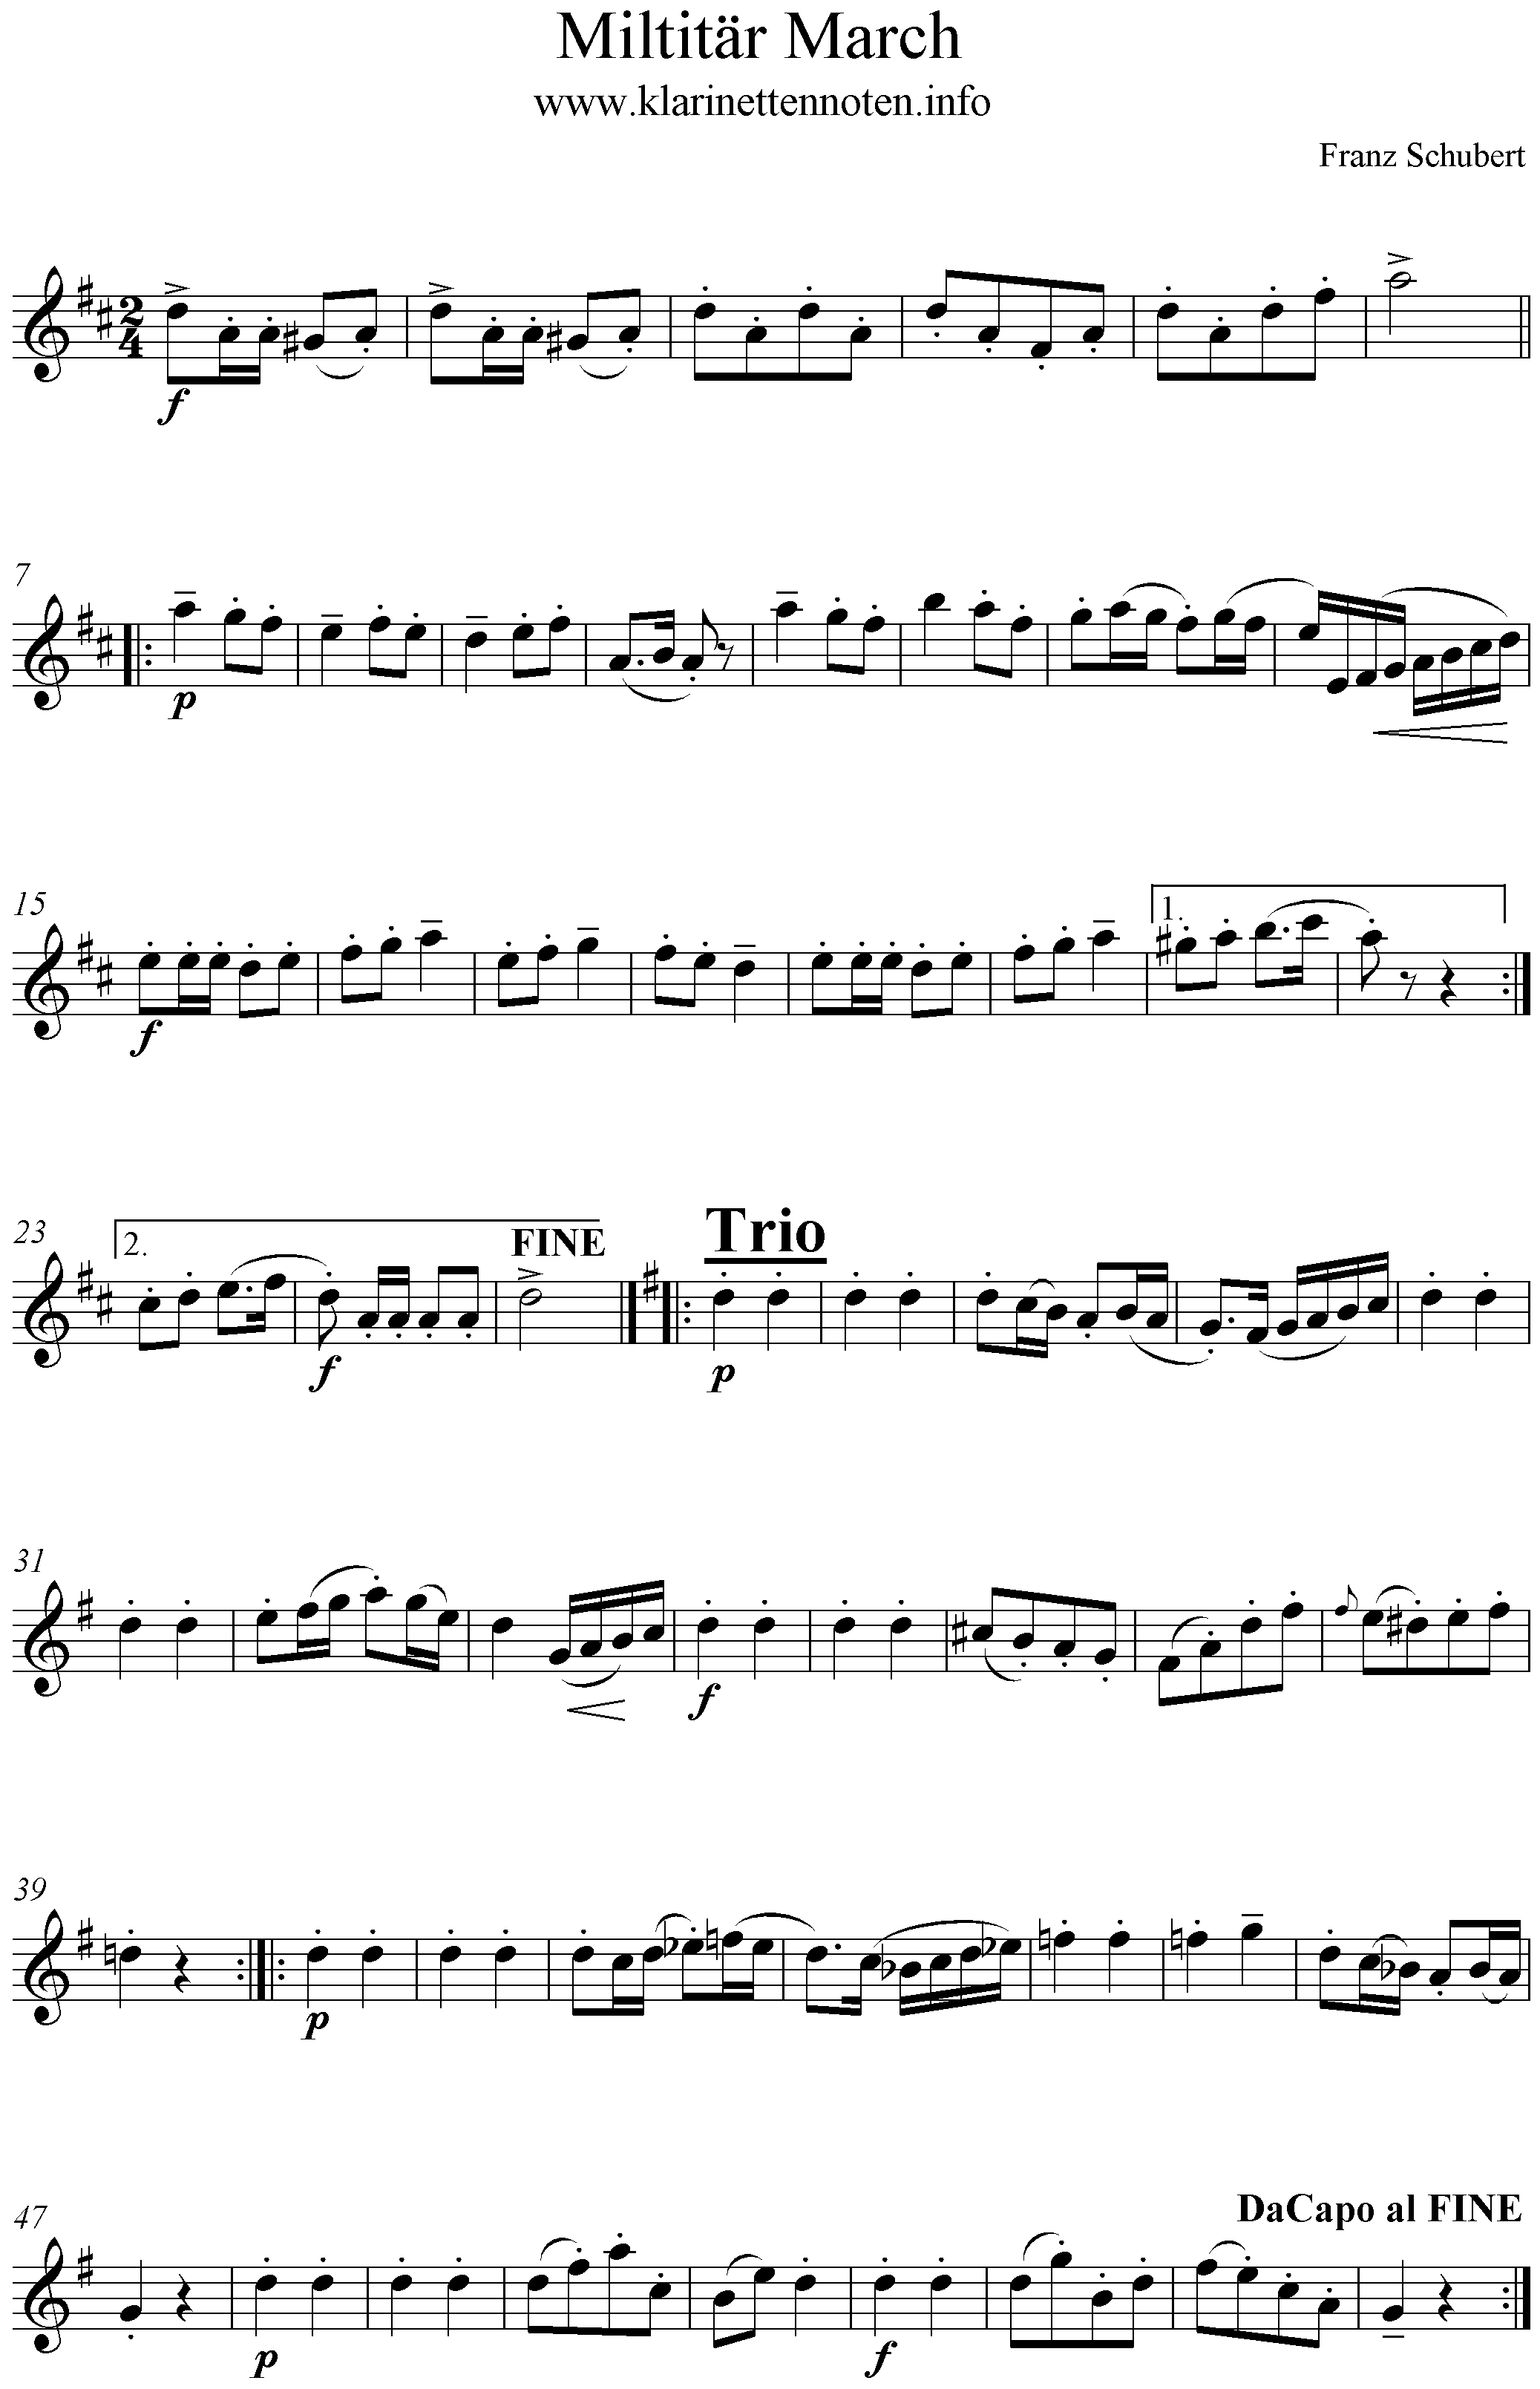 Noten Militärmarsch No1, Schubert, D-Dur